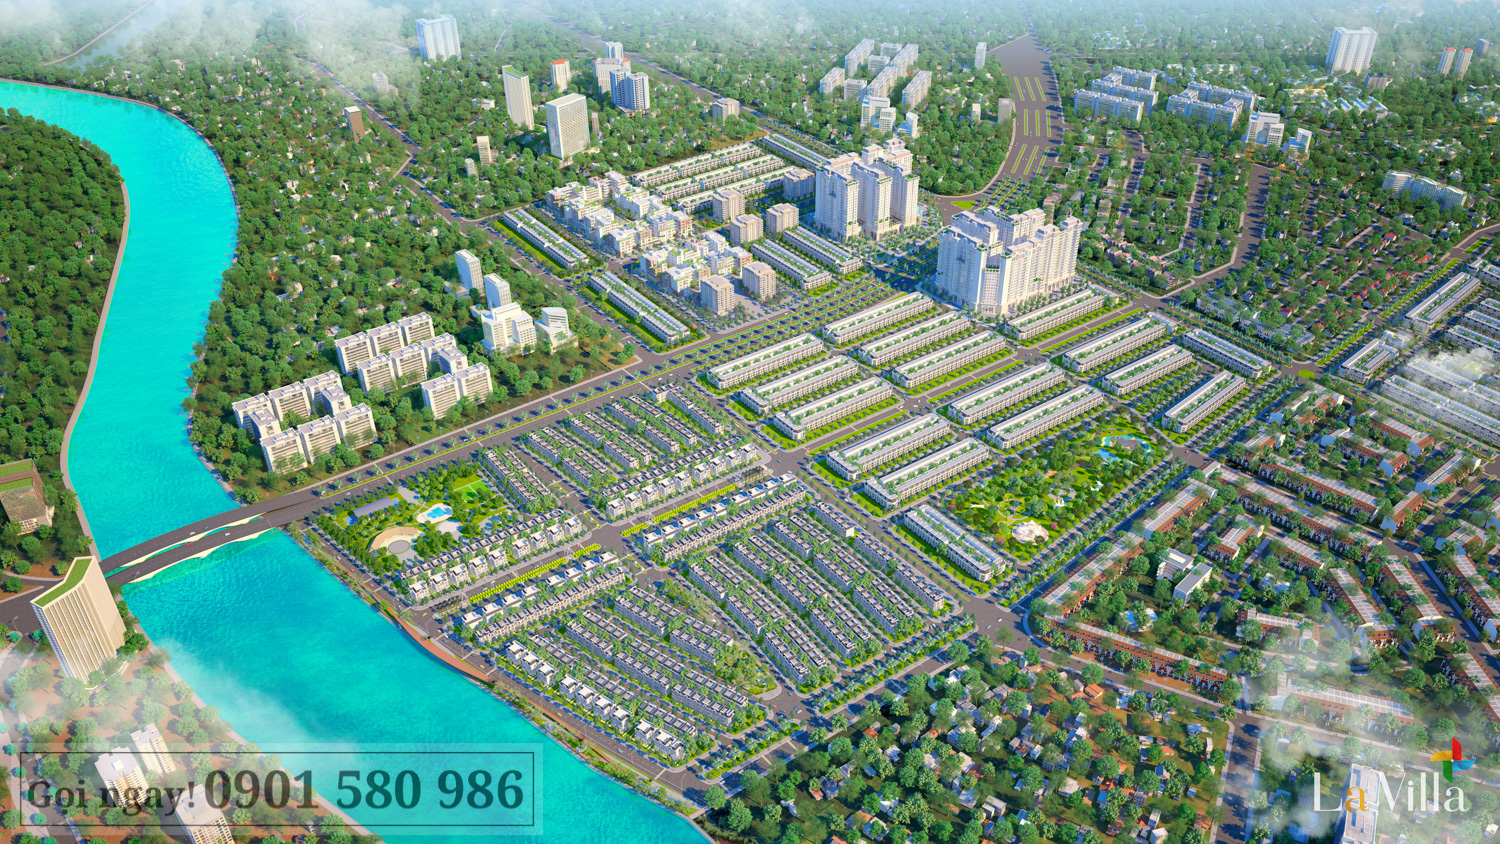 Dự án Lavilla Green City của Trần Anh Group tại Tân An, Long An - Hình 2